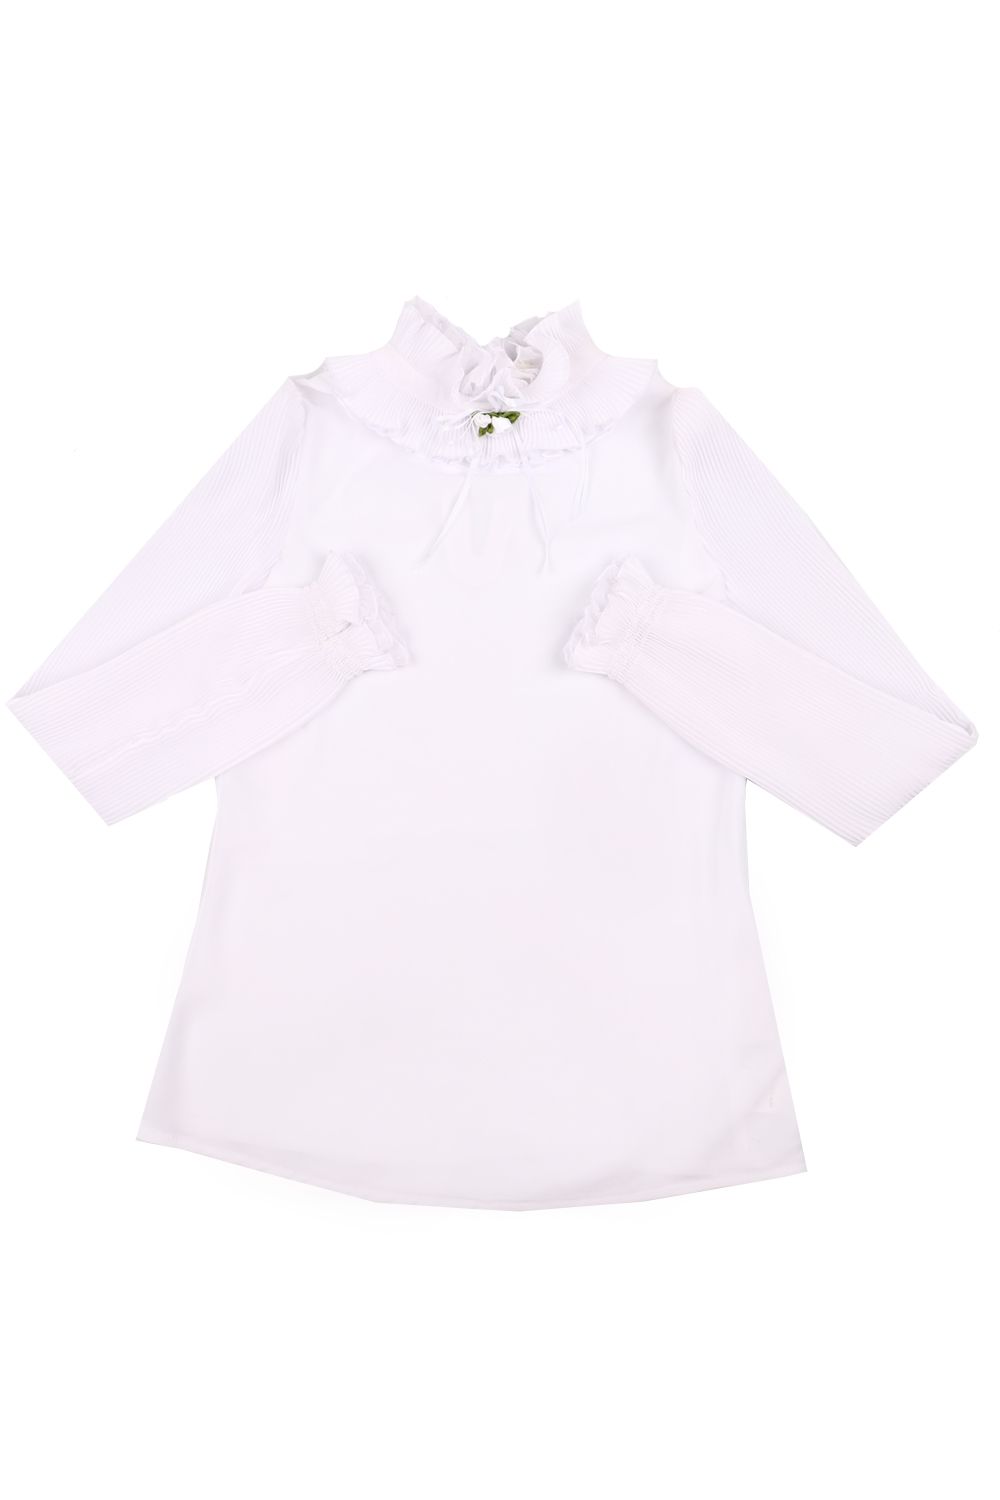 Блуза Маленькая Леди, размер 152, цвет белый 295-519-BPSHC - фото 1